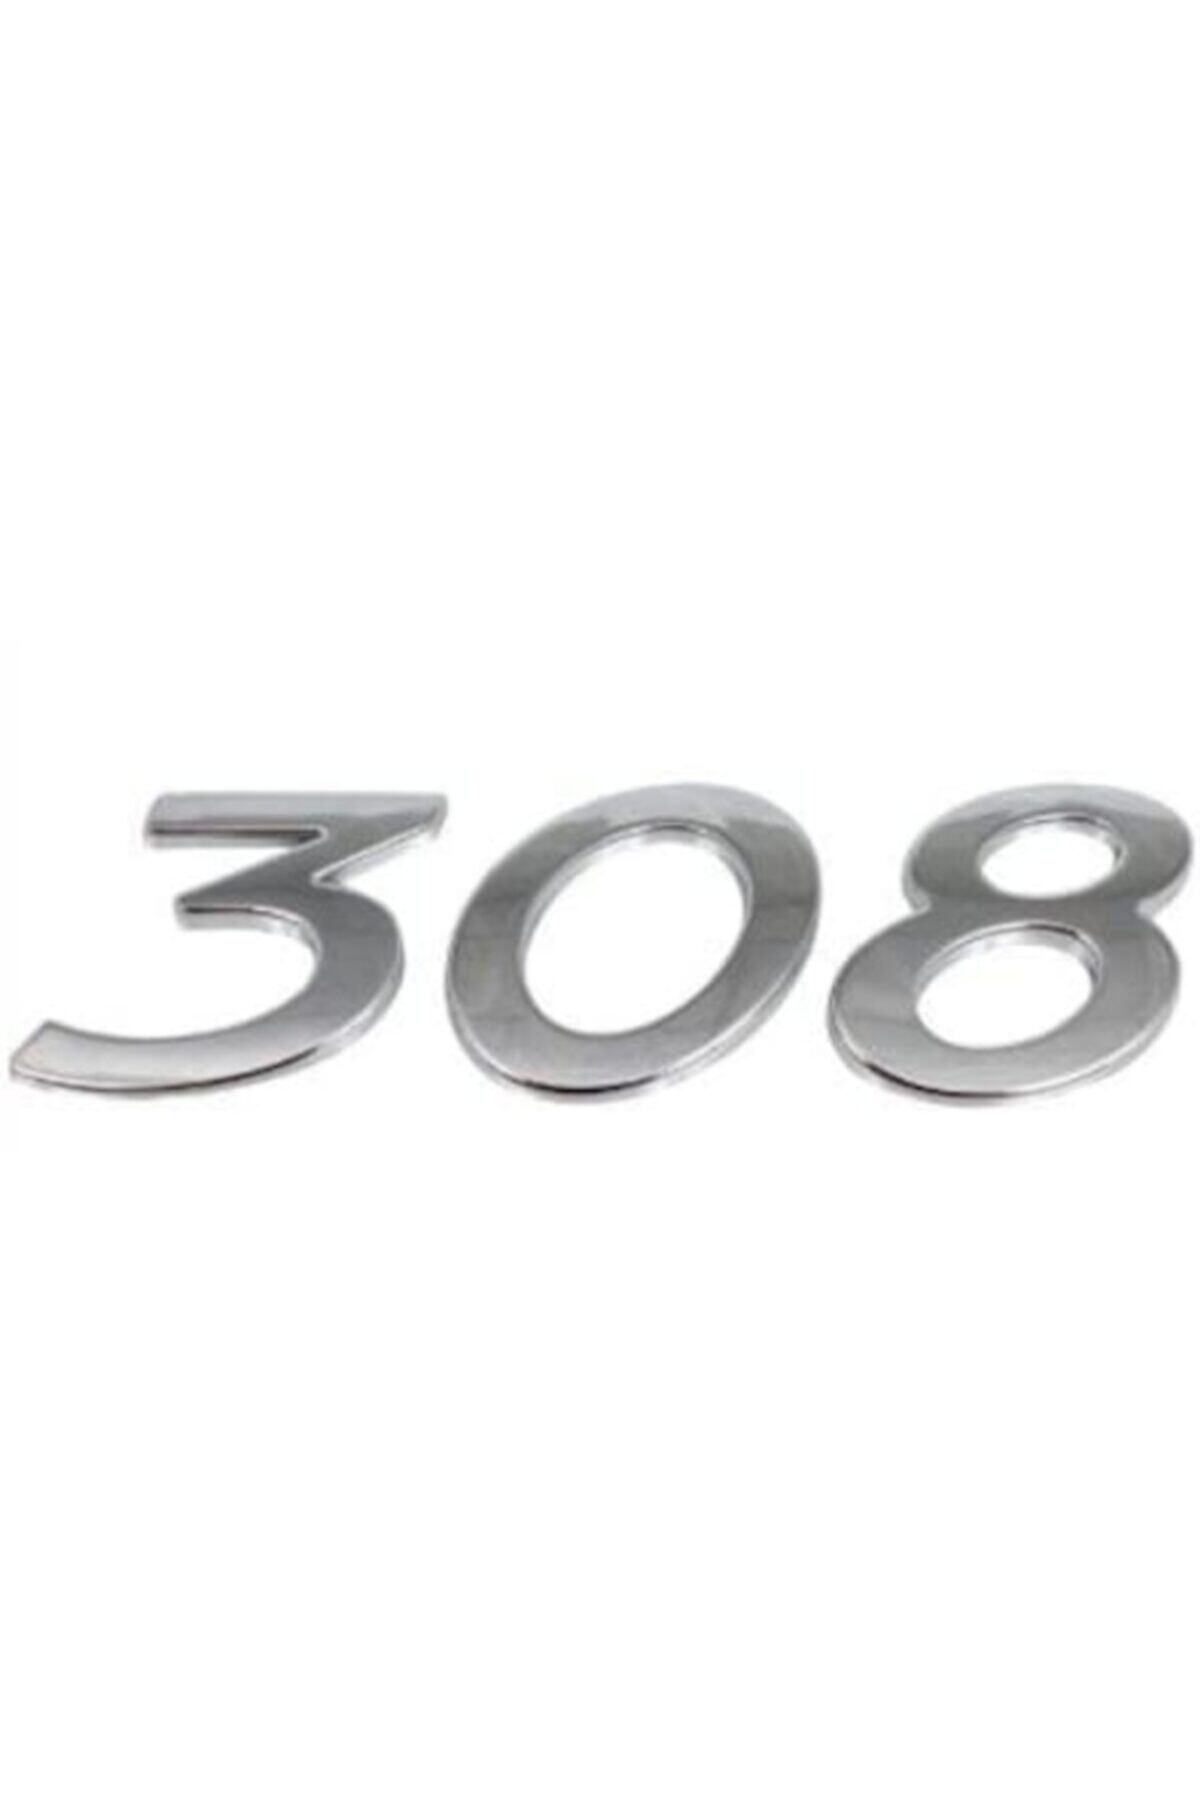 EDEXPORT Peugeot 308 ( 308 - Peugeot Ve Aslan Arma) Üçlü Yazı Seti